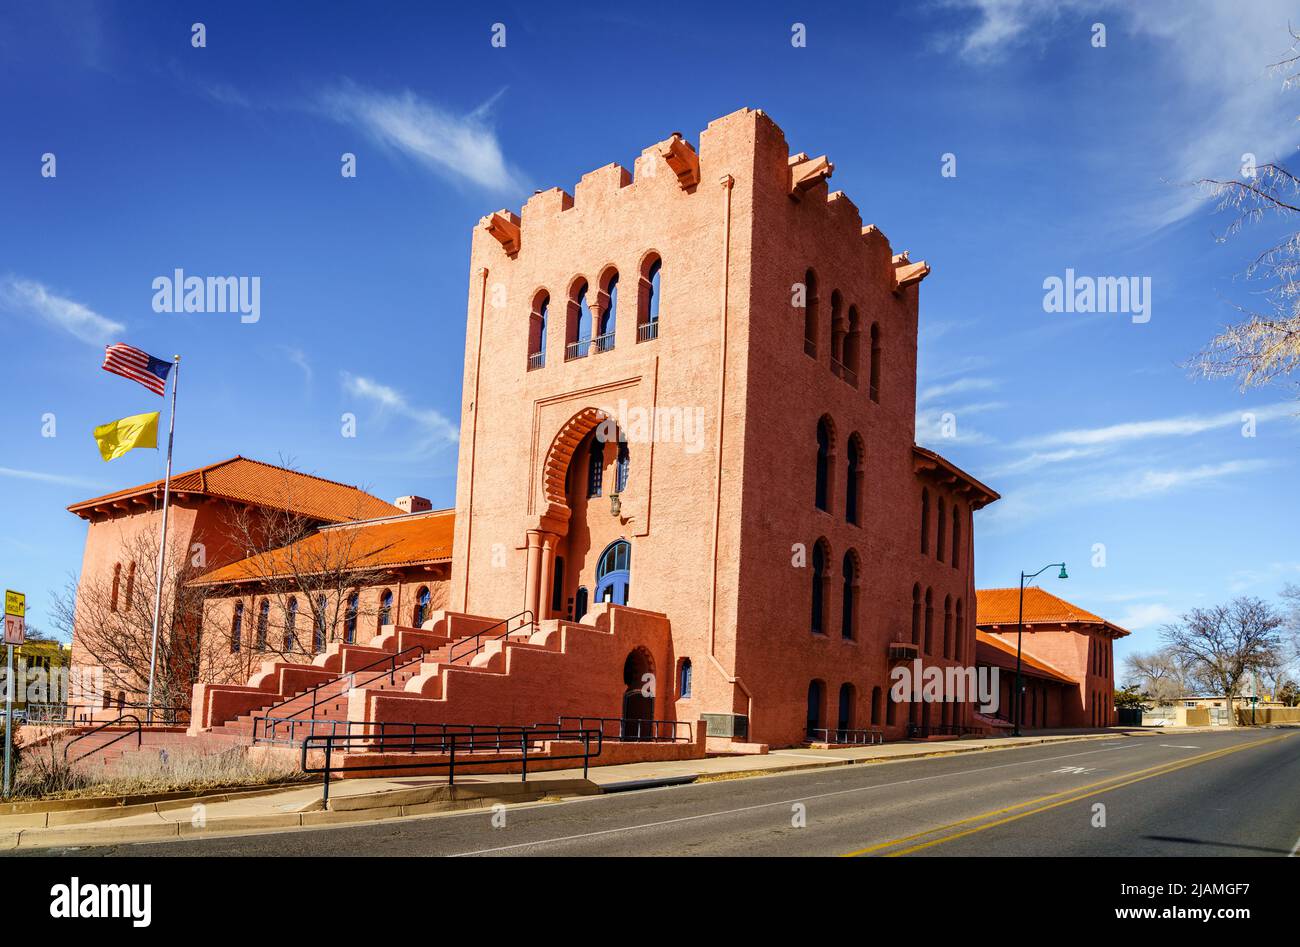 Scottish Rite masonic temple in Santa Fe, New Mexico Stock Photo